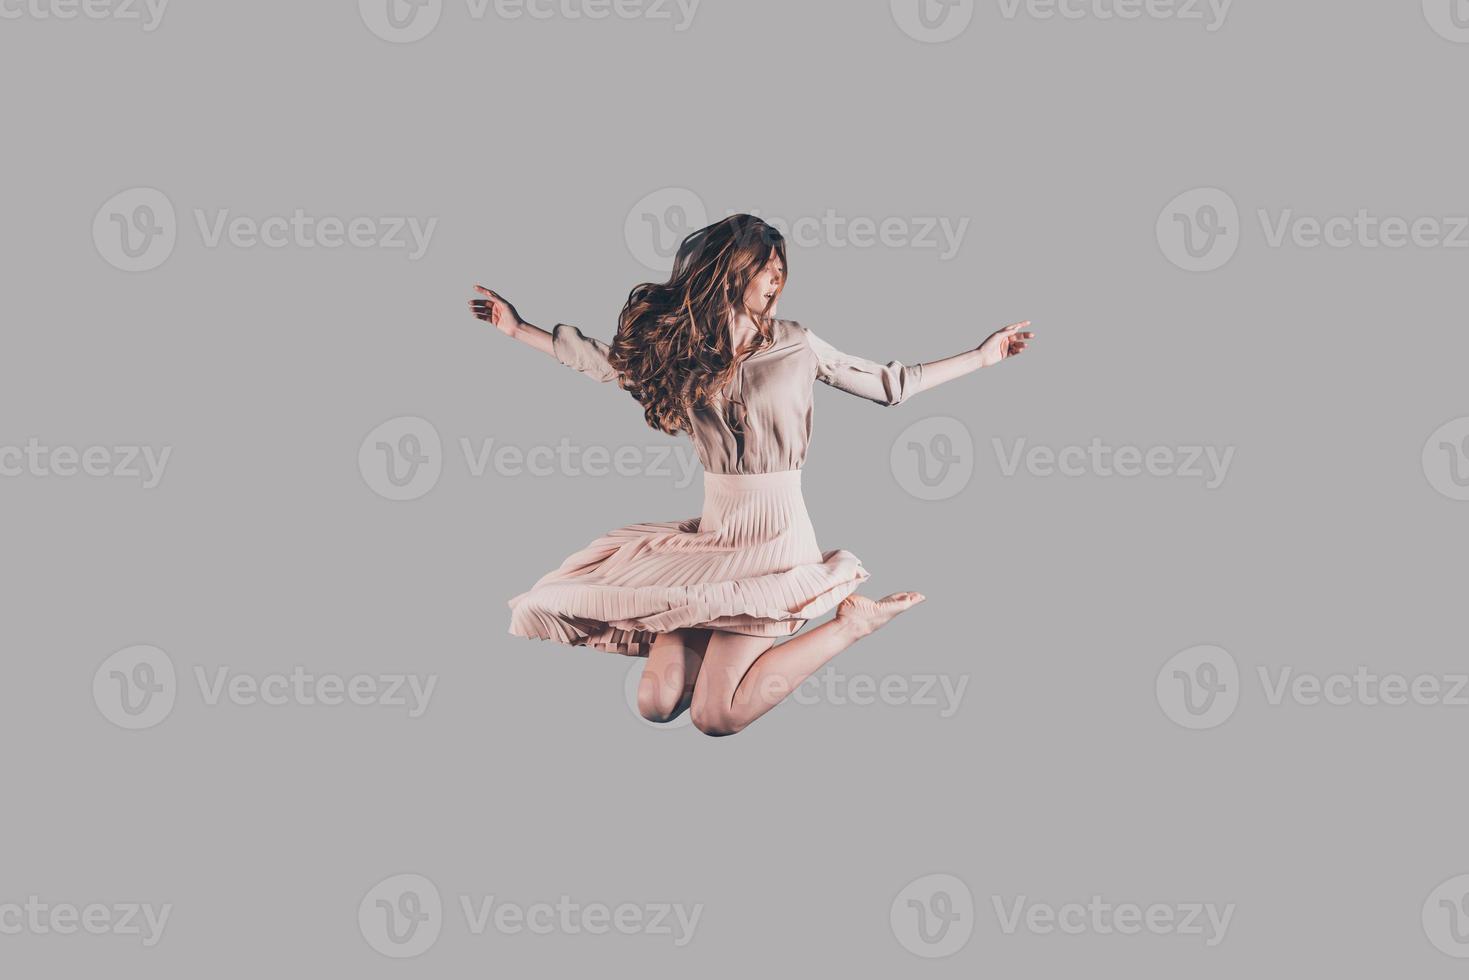 voler comme un oiseau. prise de vue en studio d'une jeune femme attirante planant dans l'air photo